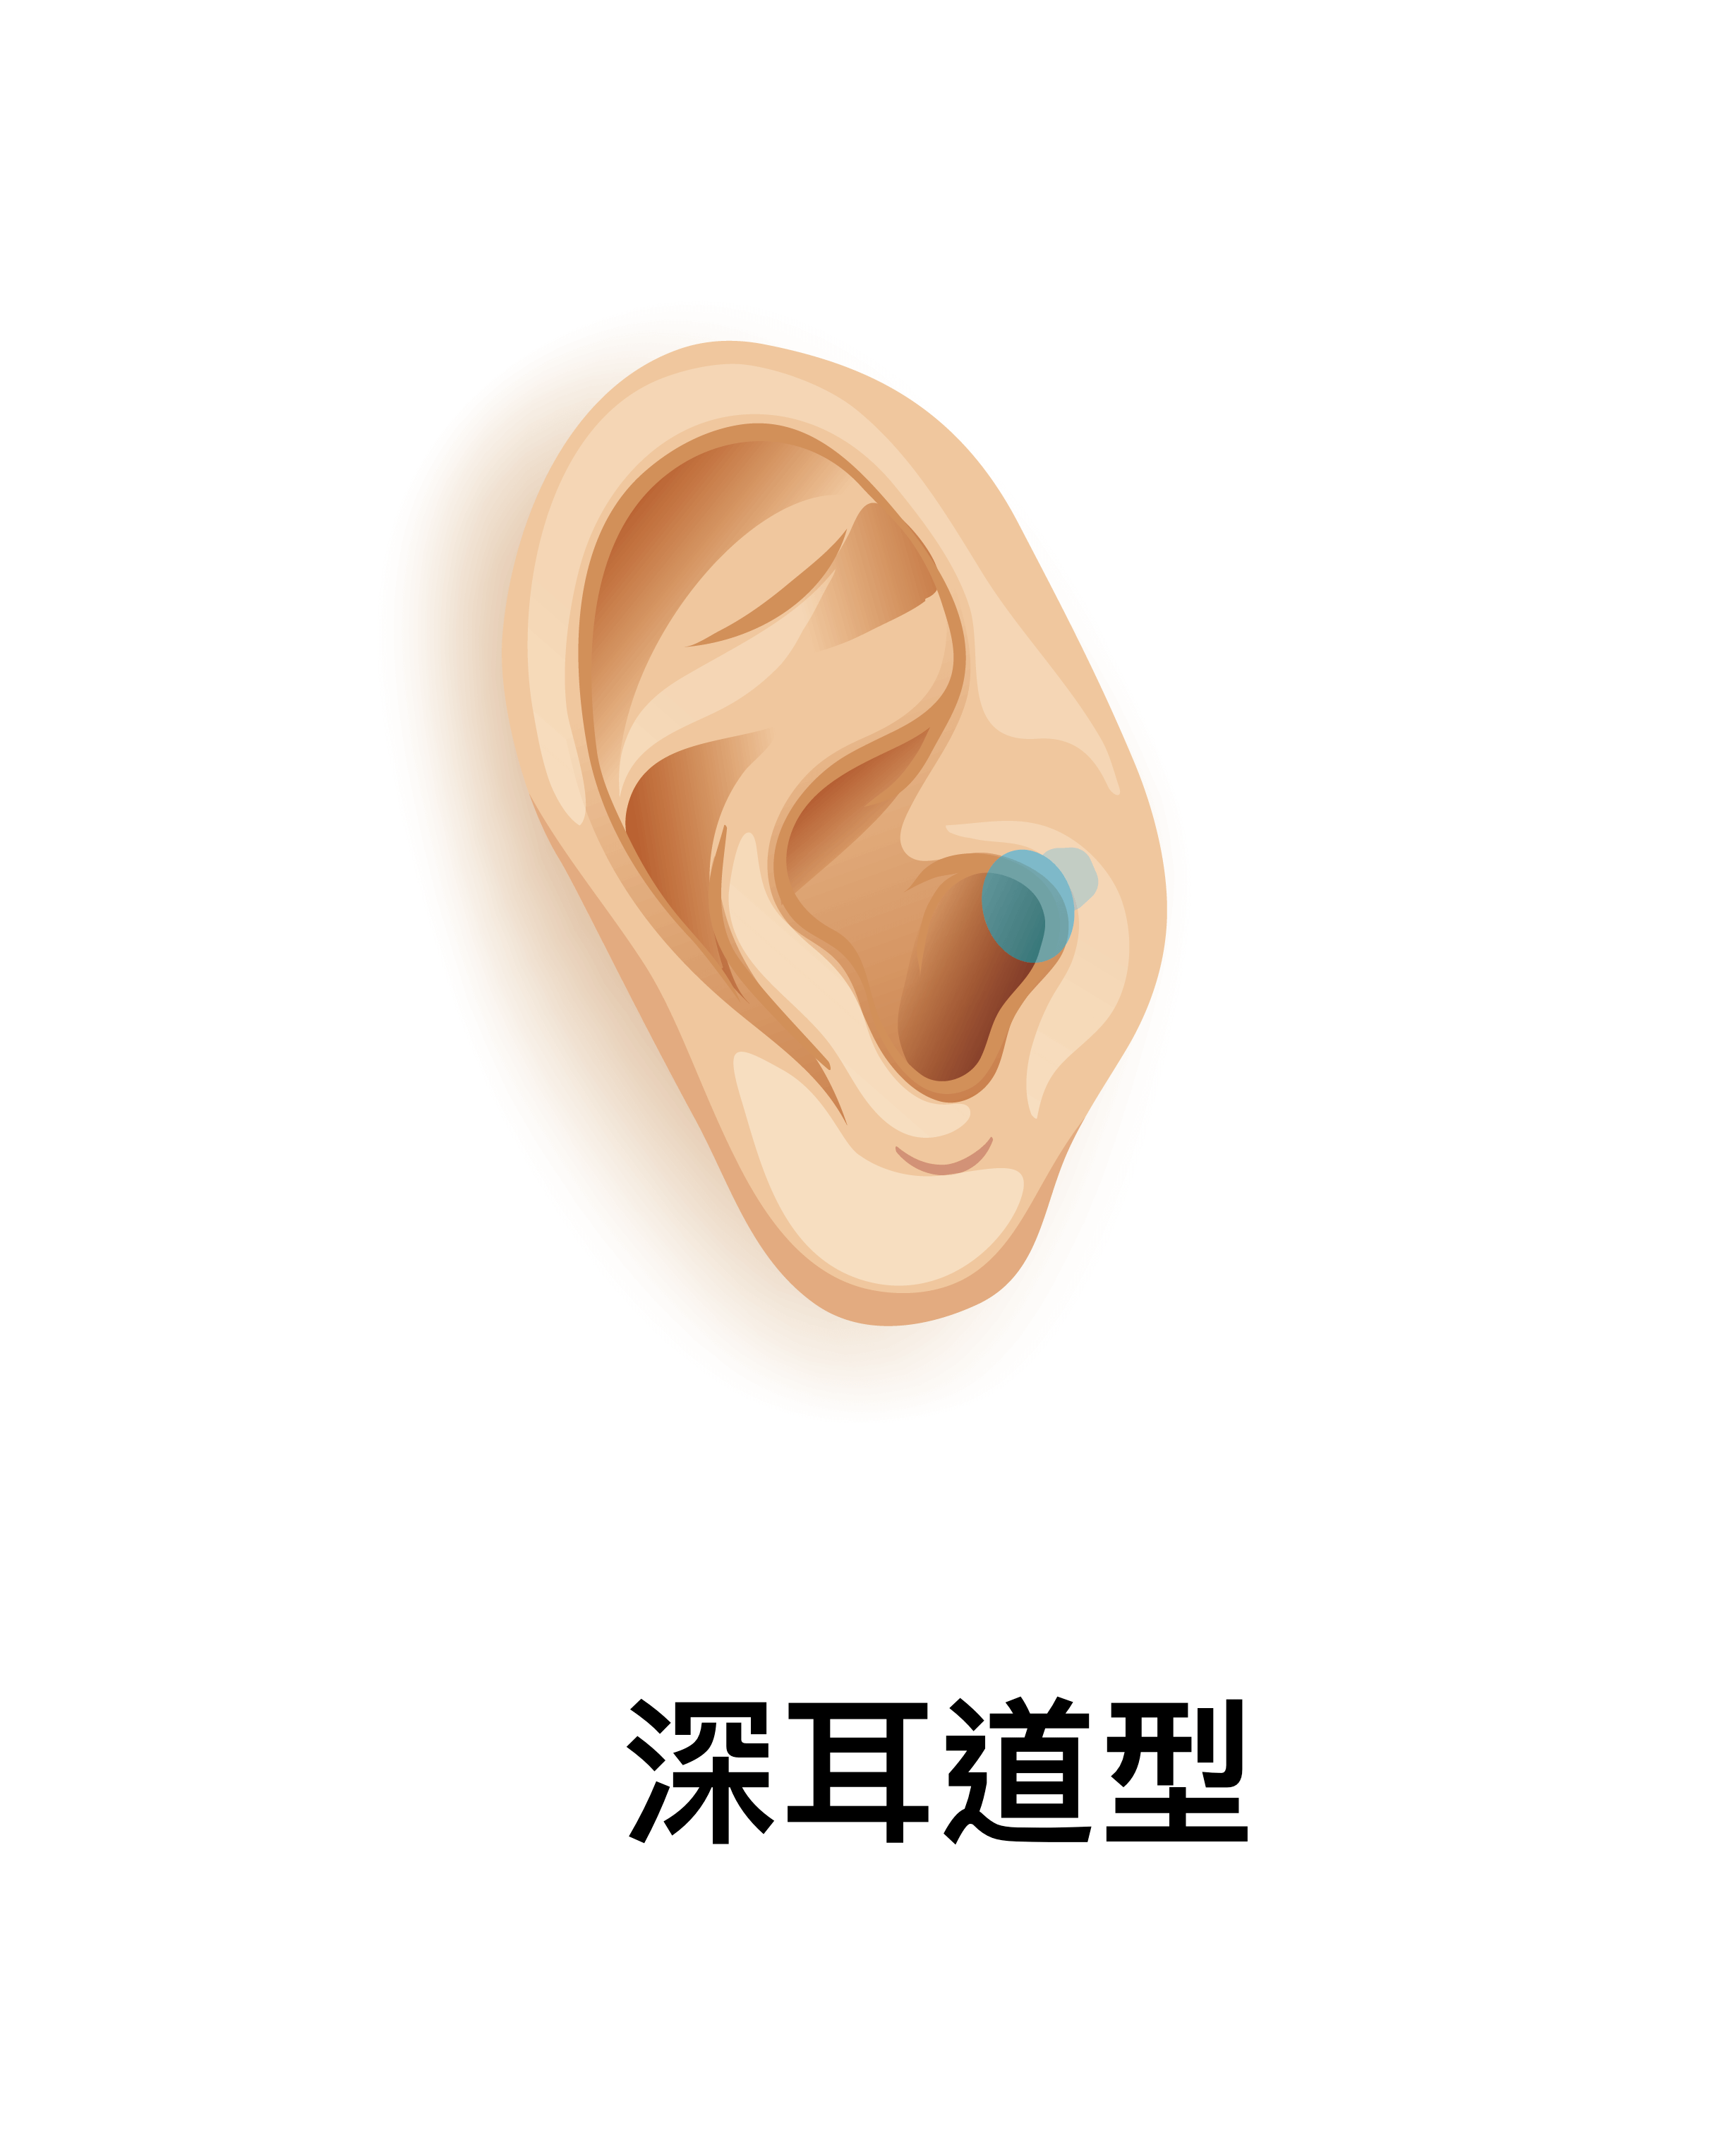 耳道內置接收器型（IIC）及 深耳道內置接收器型（CIC）